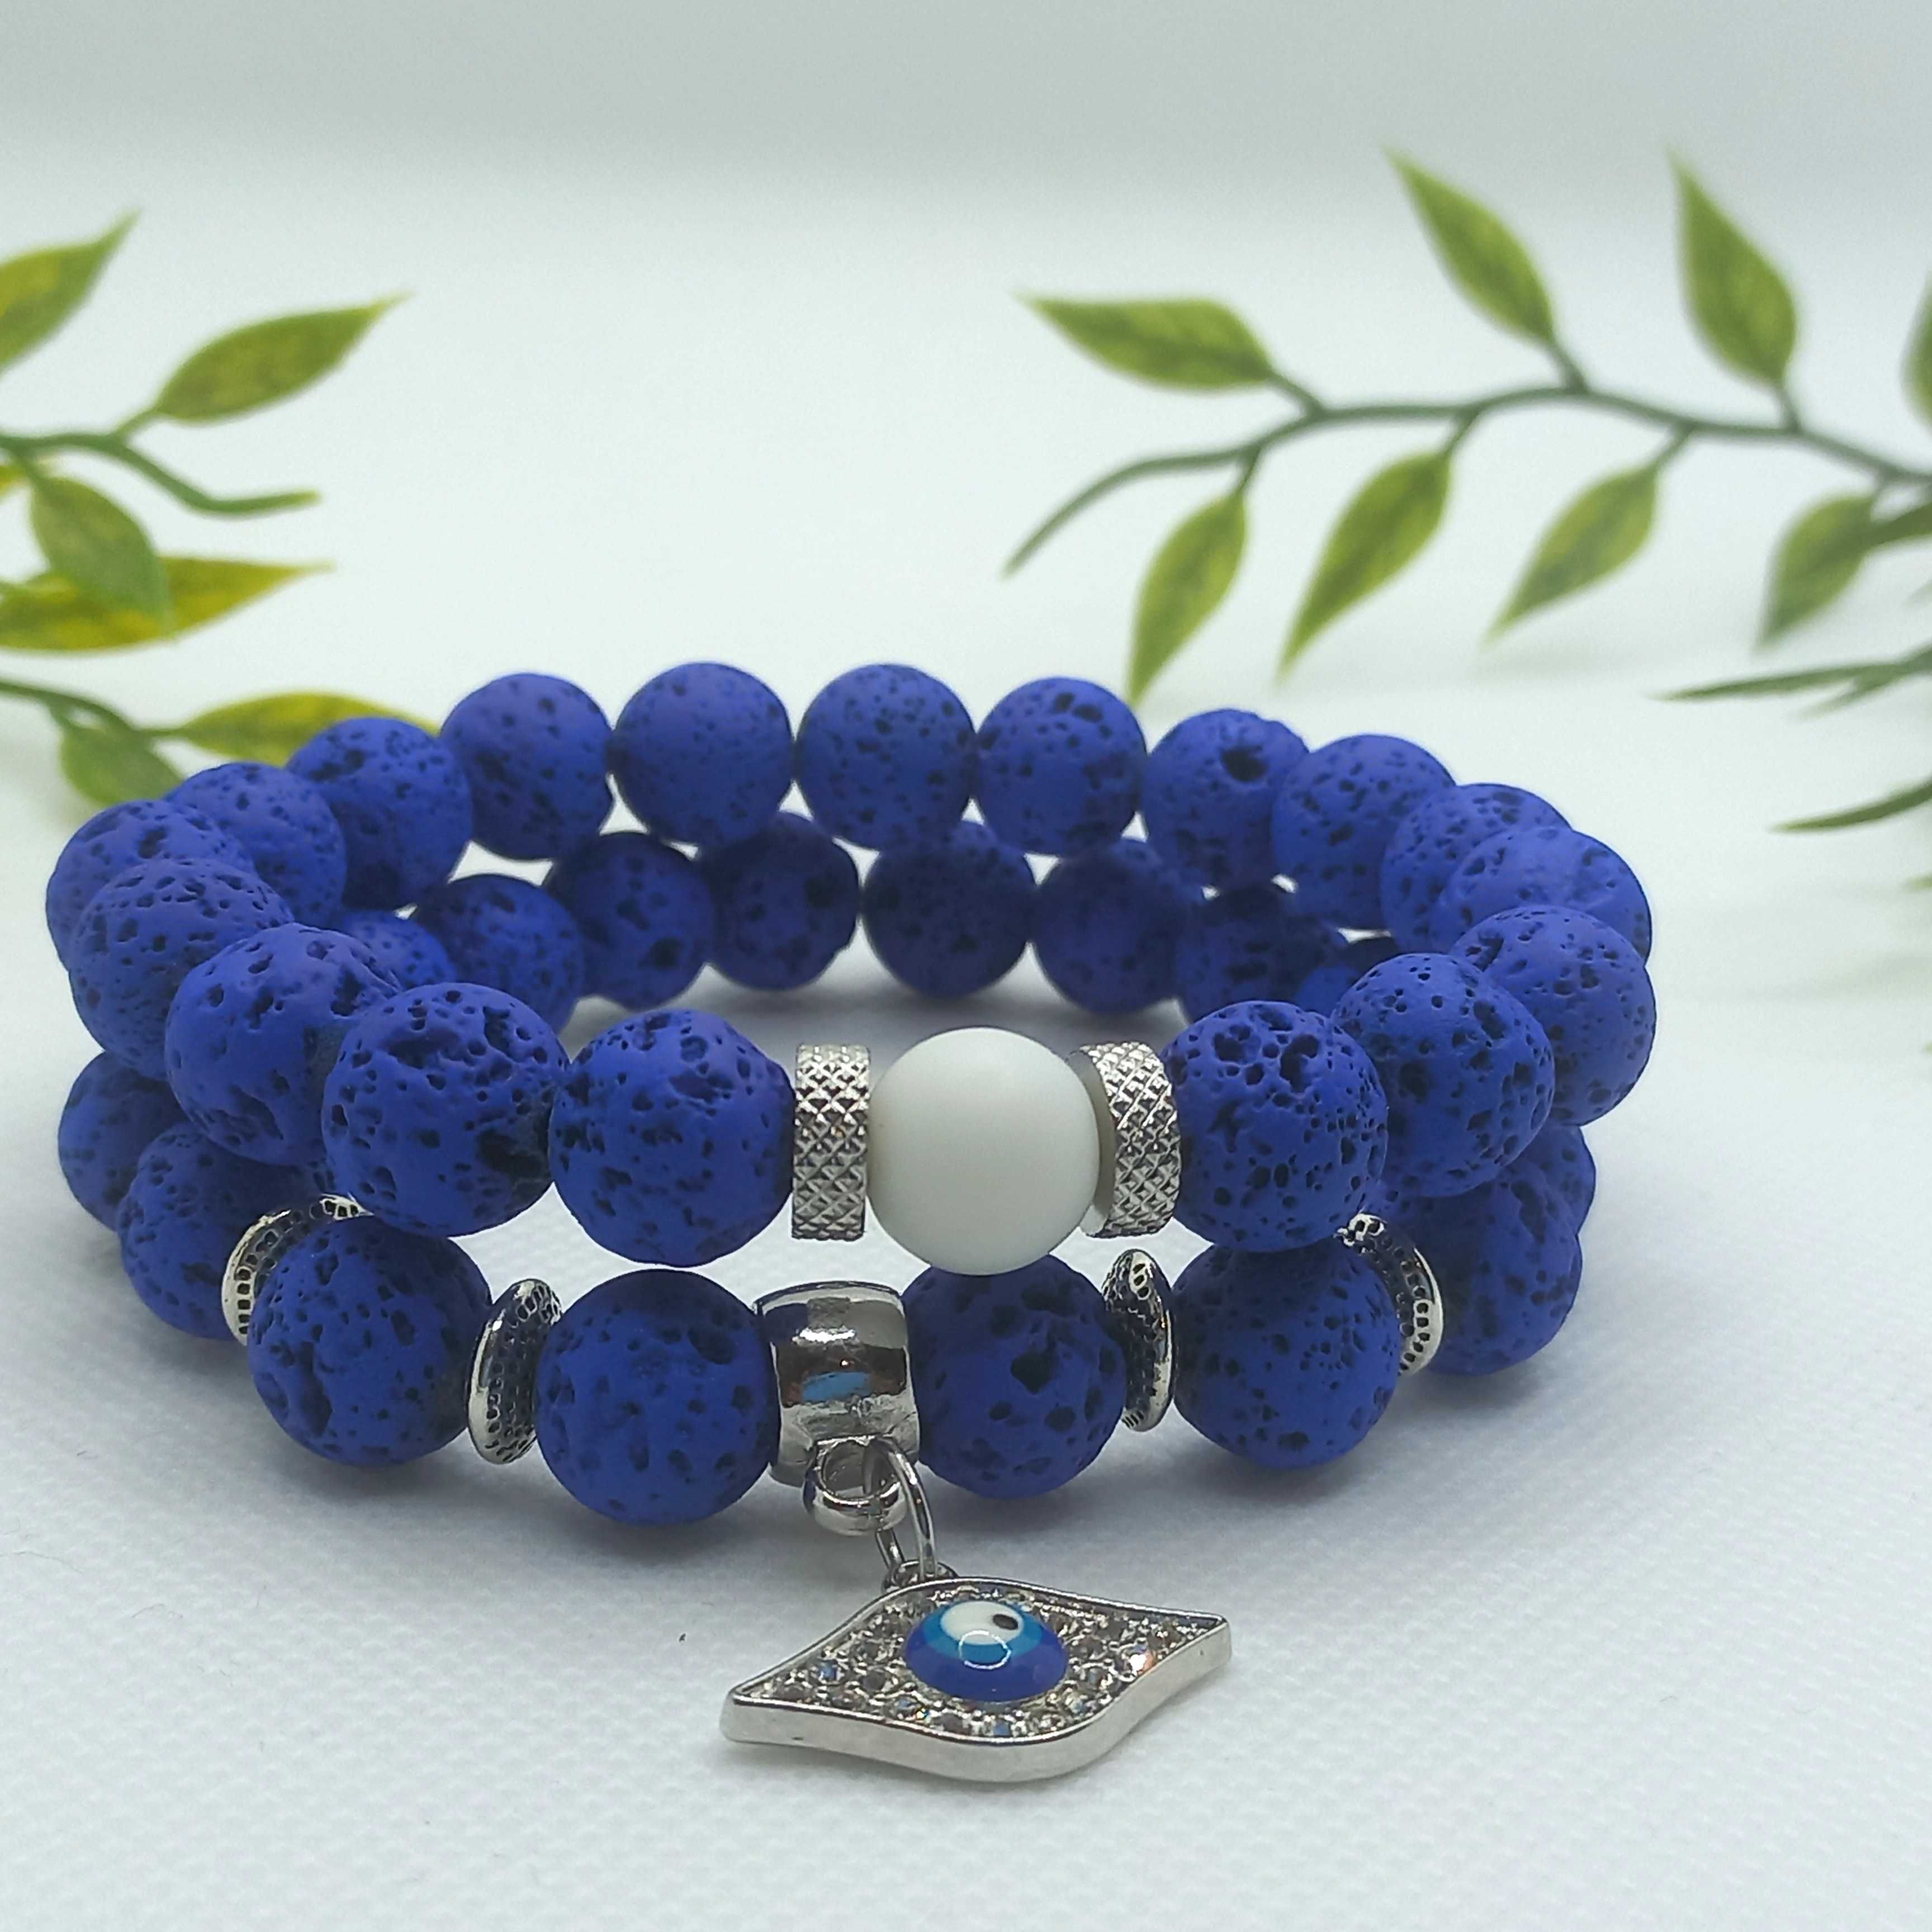 Chic blue lava evil eye pendant bracelet set for men.